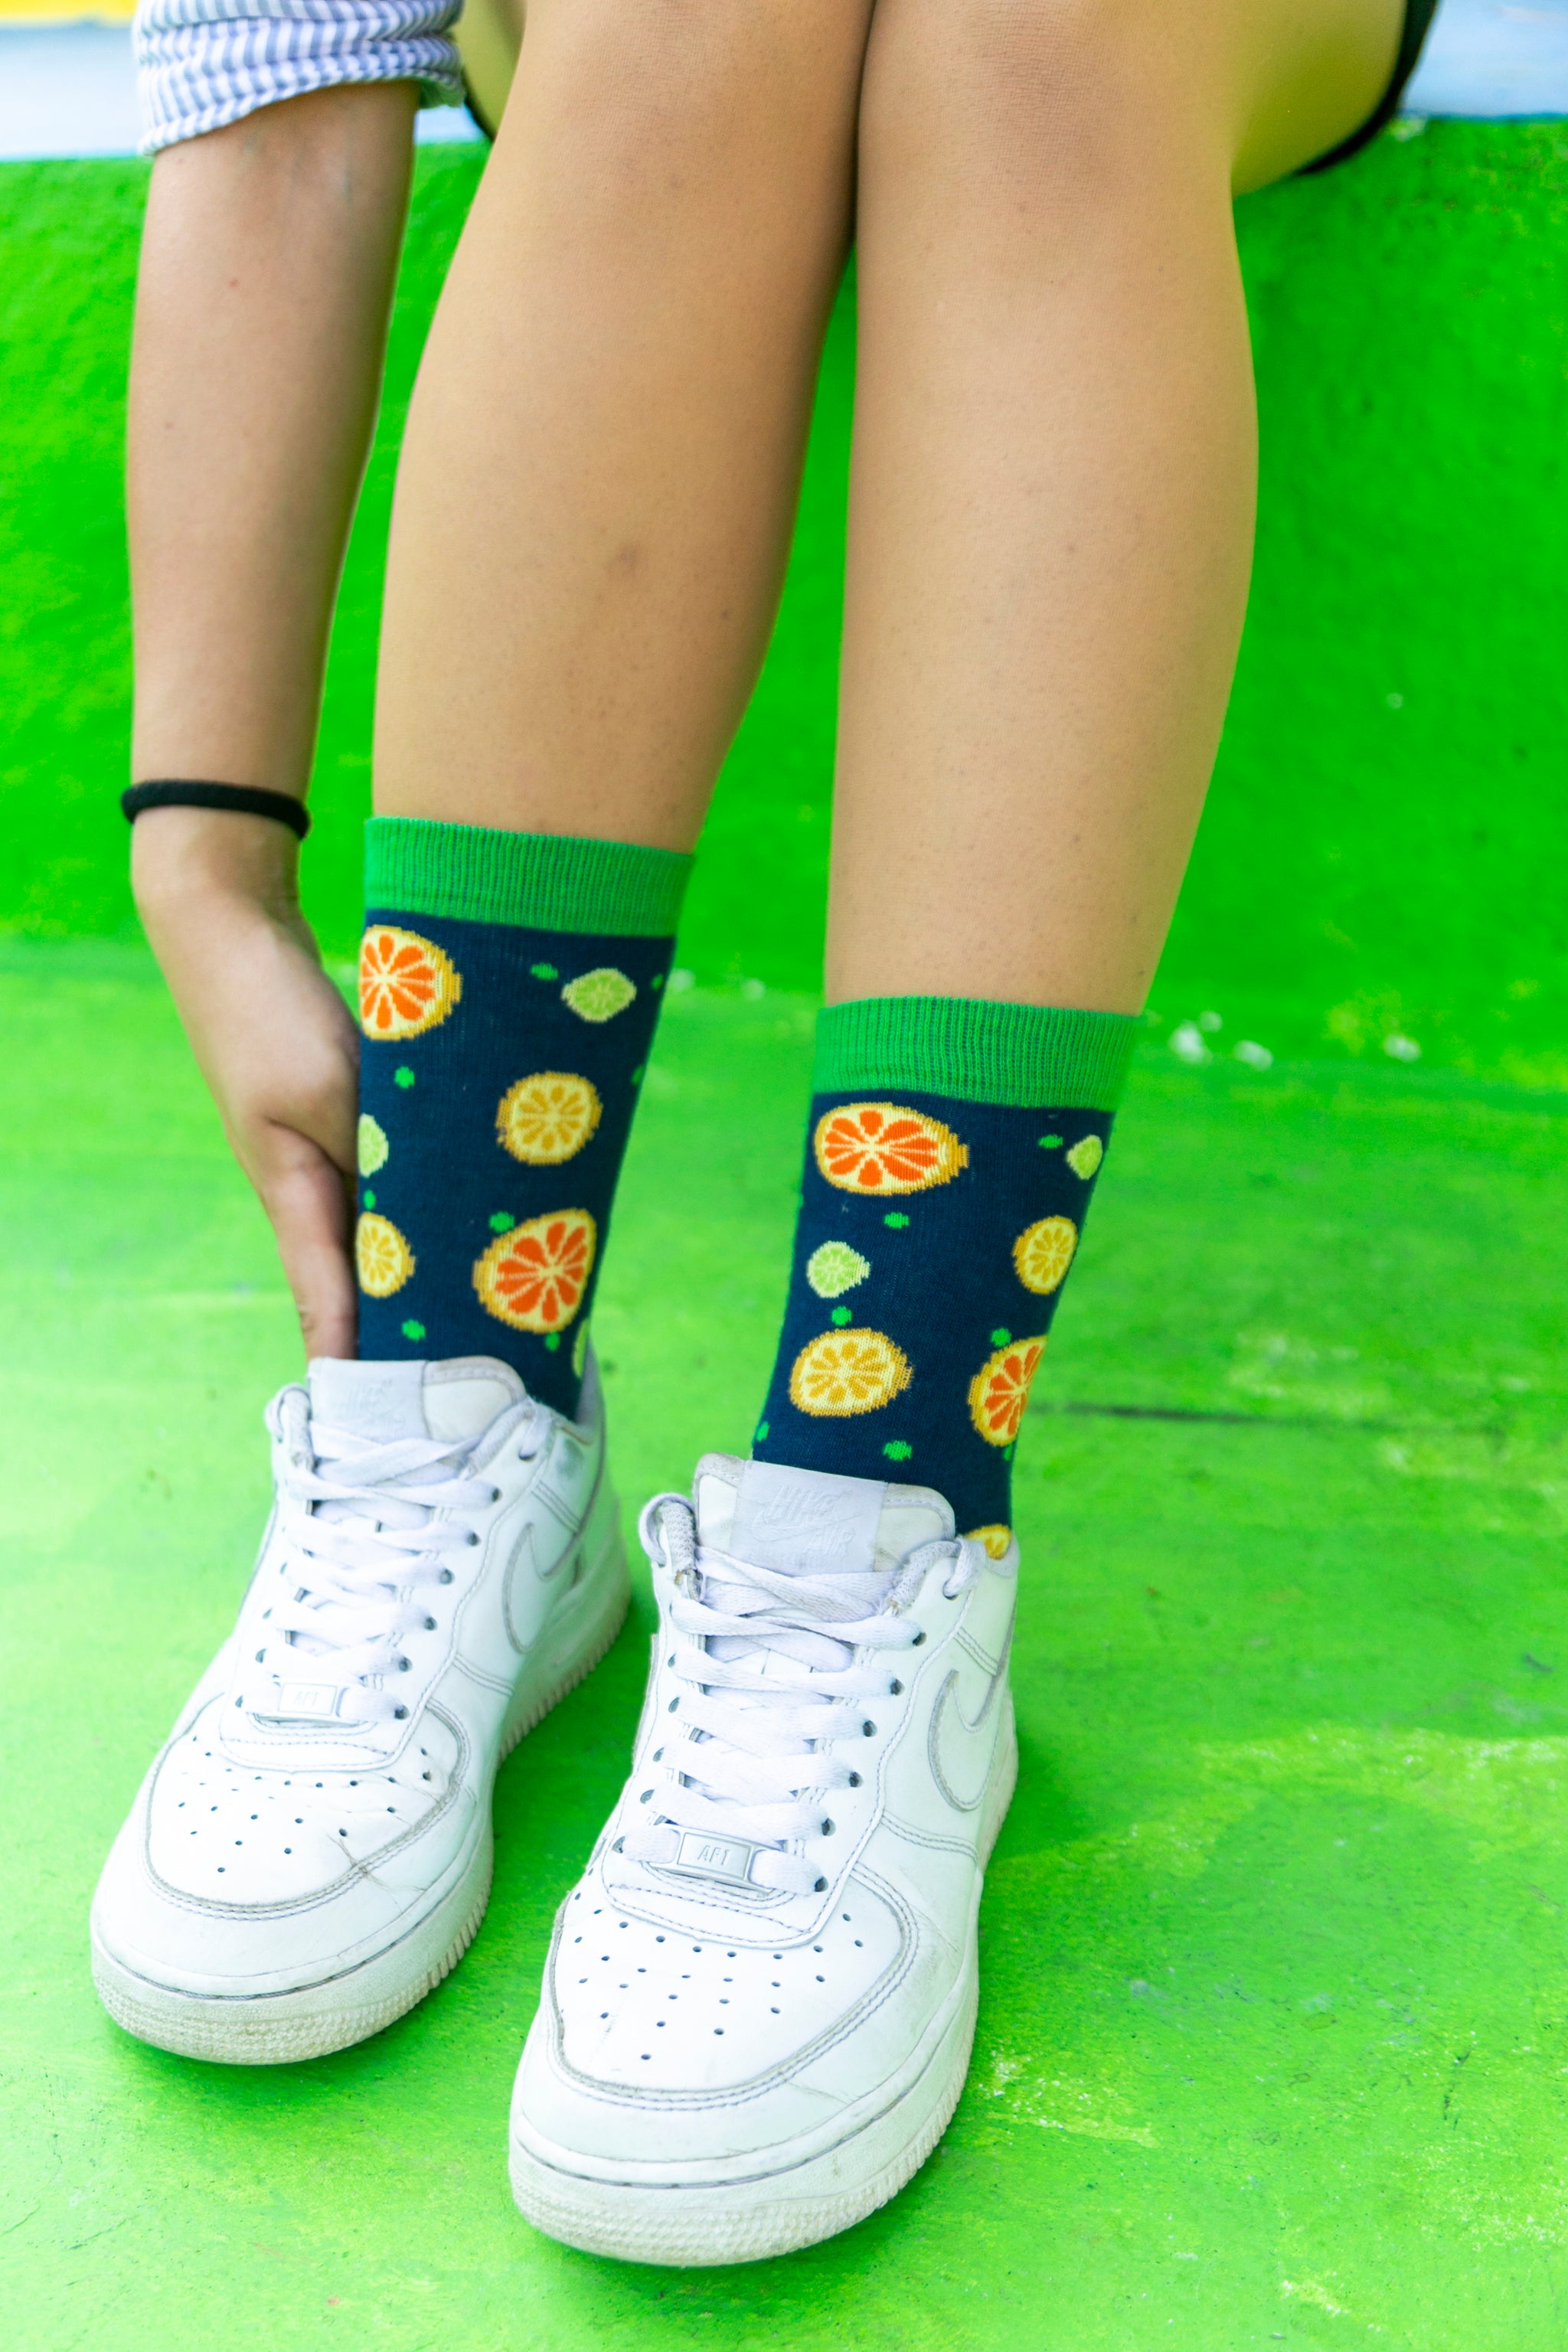 Women's Citrus Socks